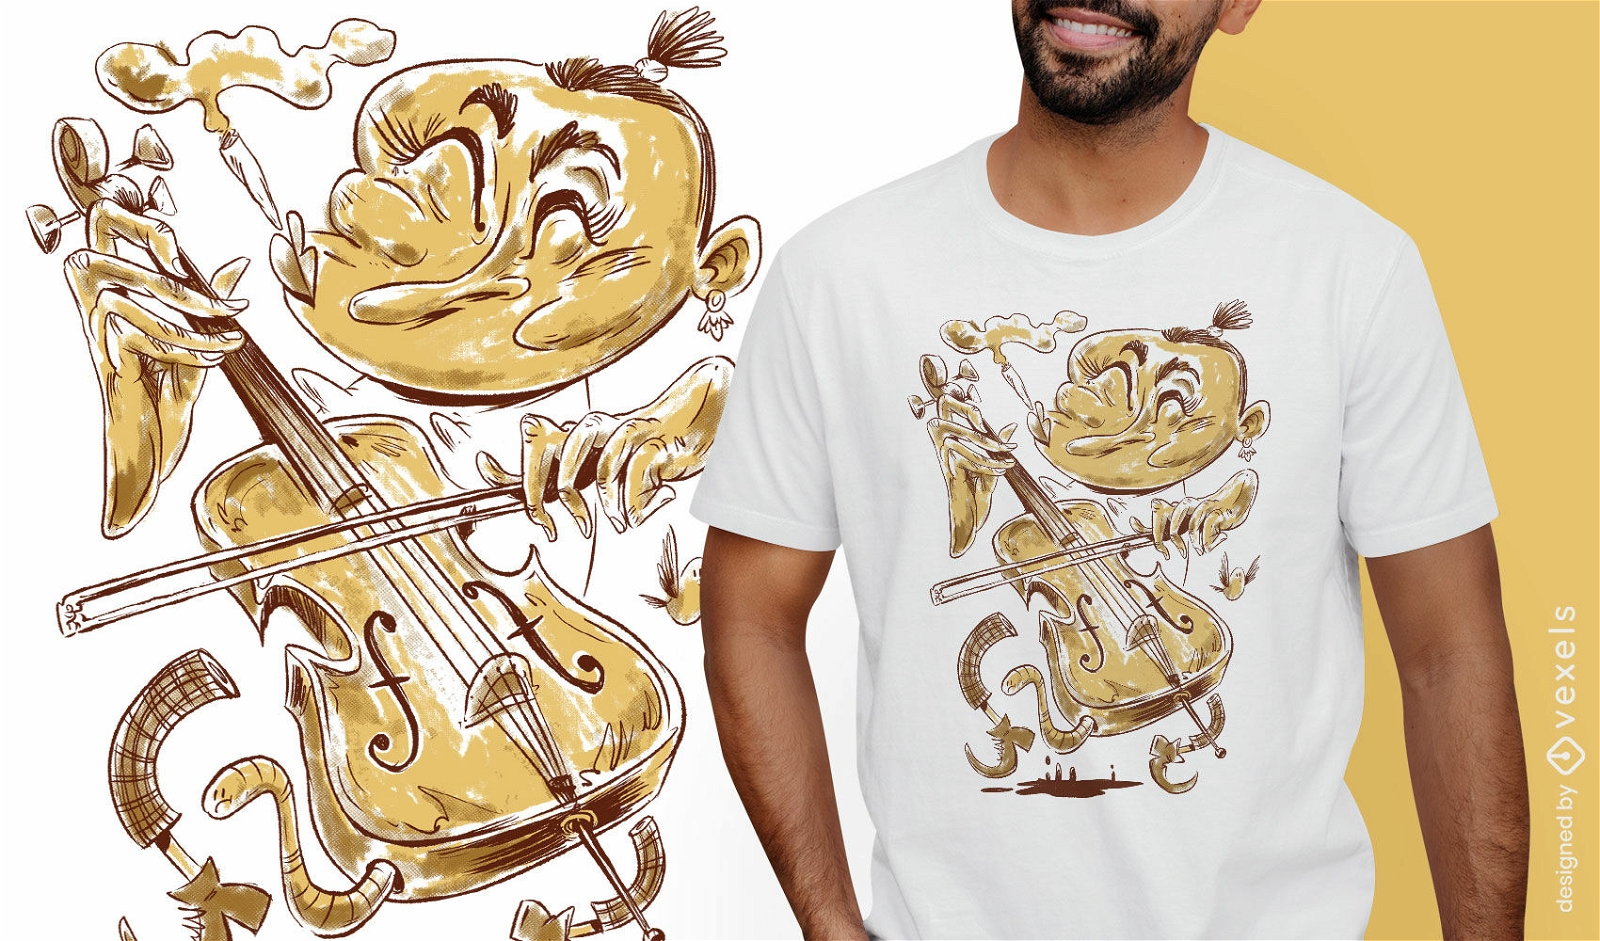 Cello-Spieler-Cartoon-Musiker-T-Shirt-Design